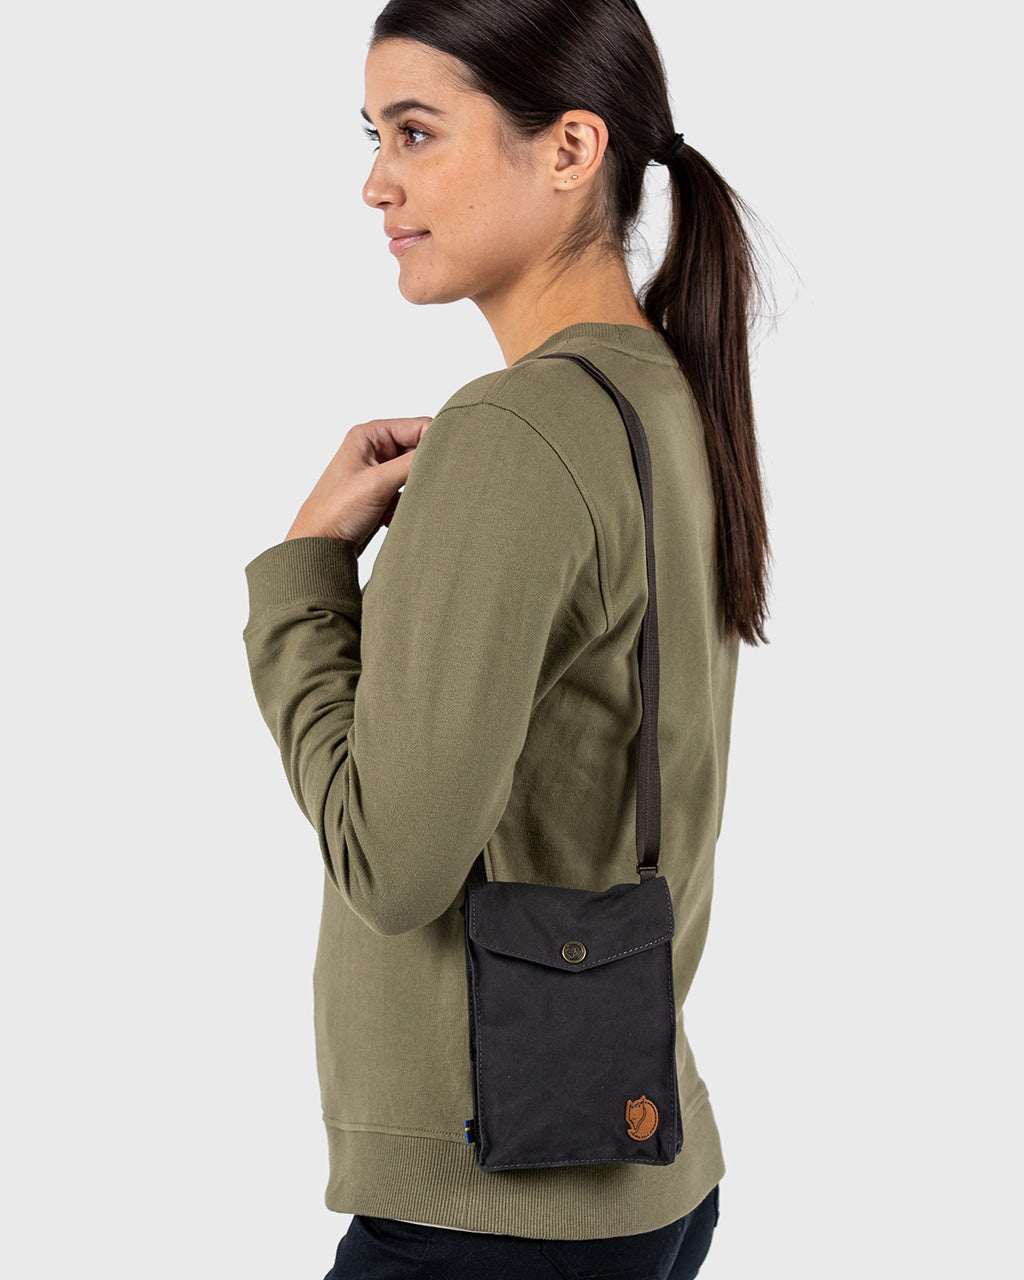 pijn doen Erge, ernstige Baars Fjallraven Pocket Shoulder Bag:Versatile Accessory for Every Adventure –  BrandsWalk